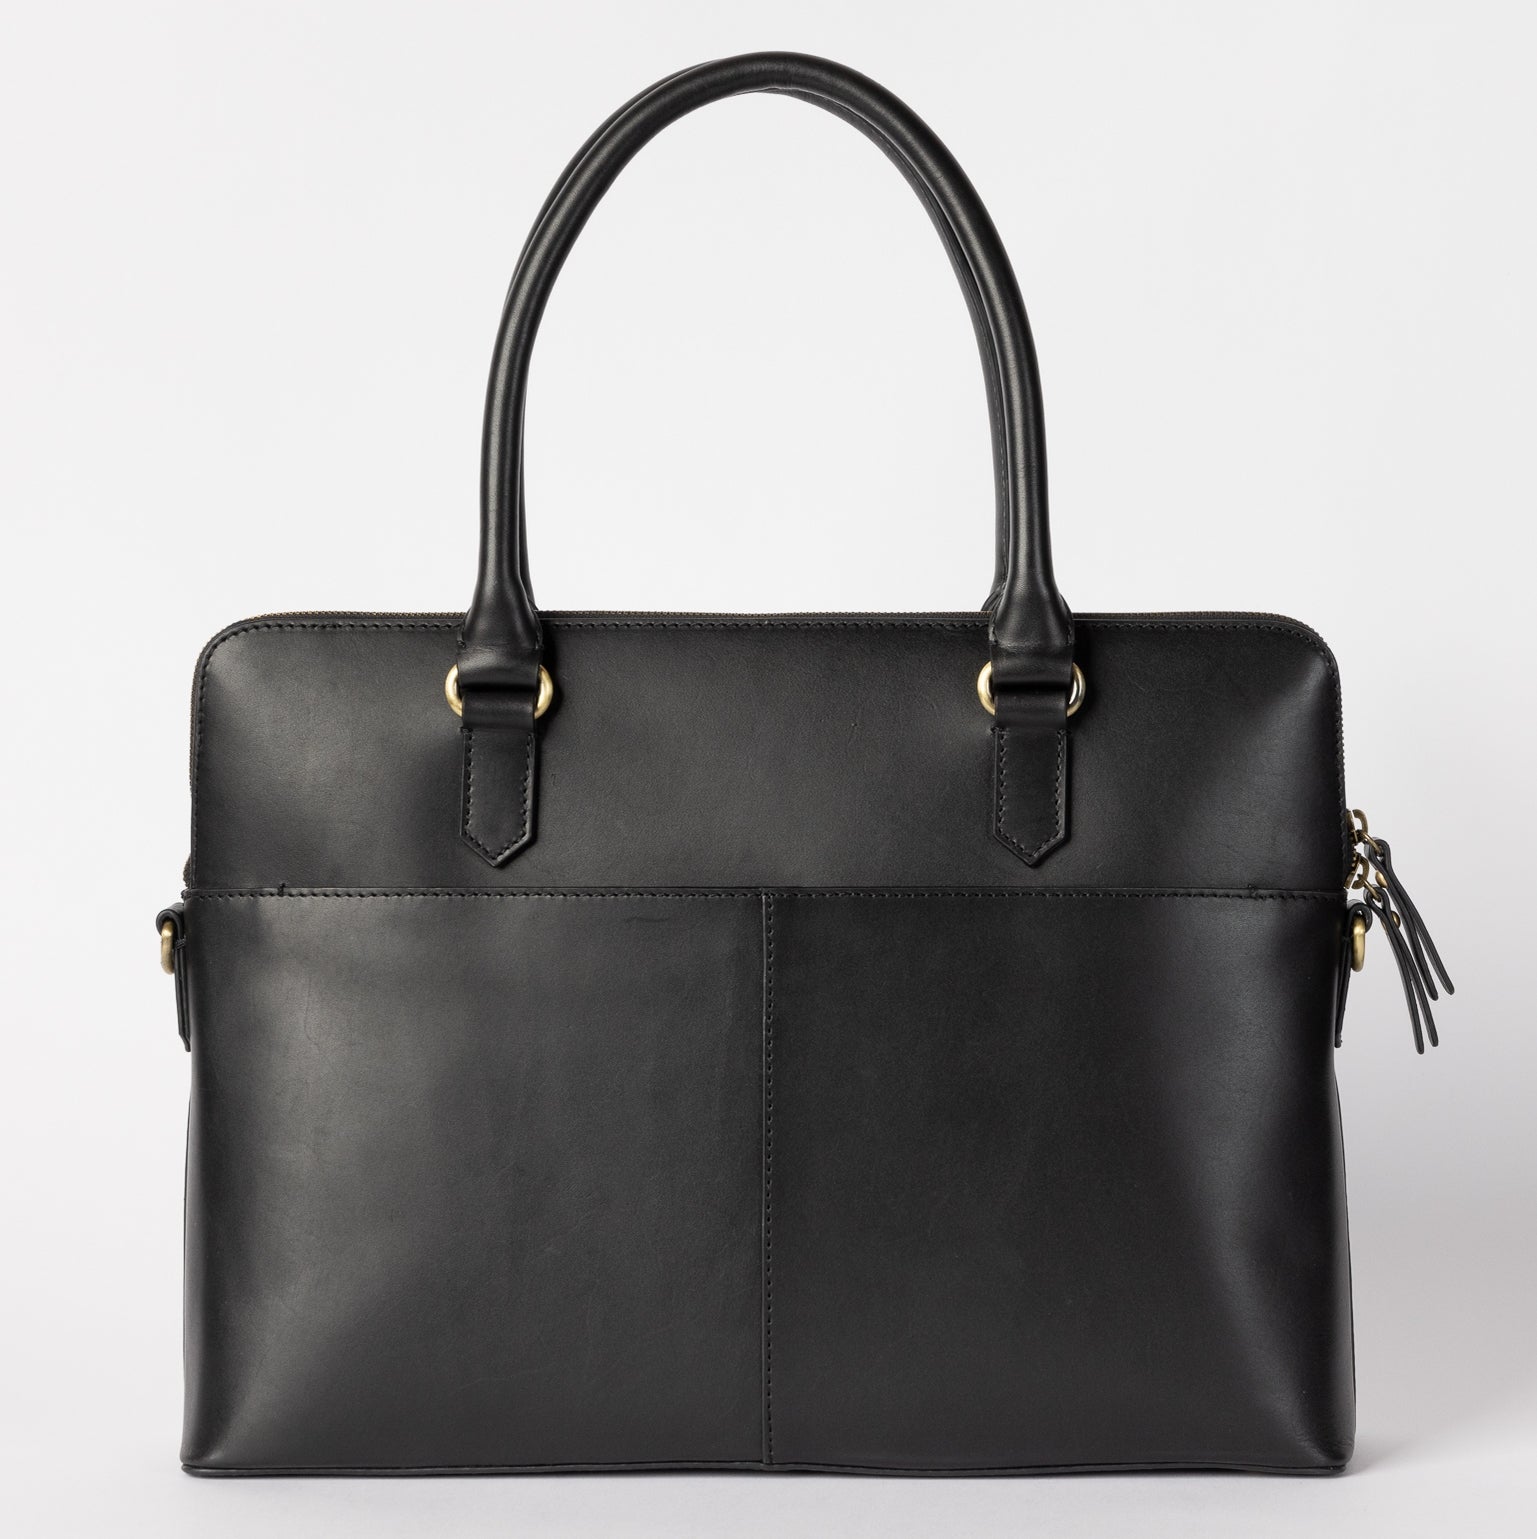 O My Bag Hayden Leather Bag in Black